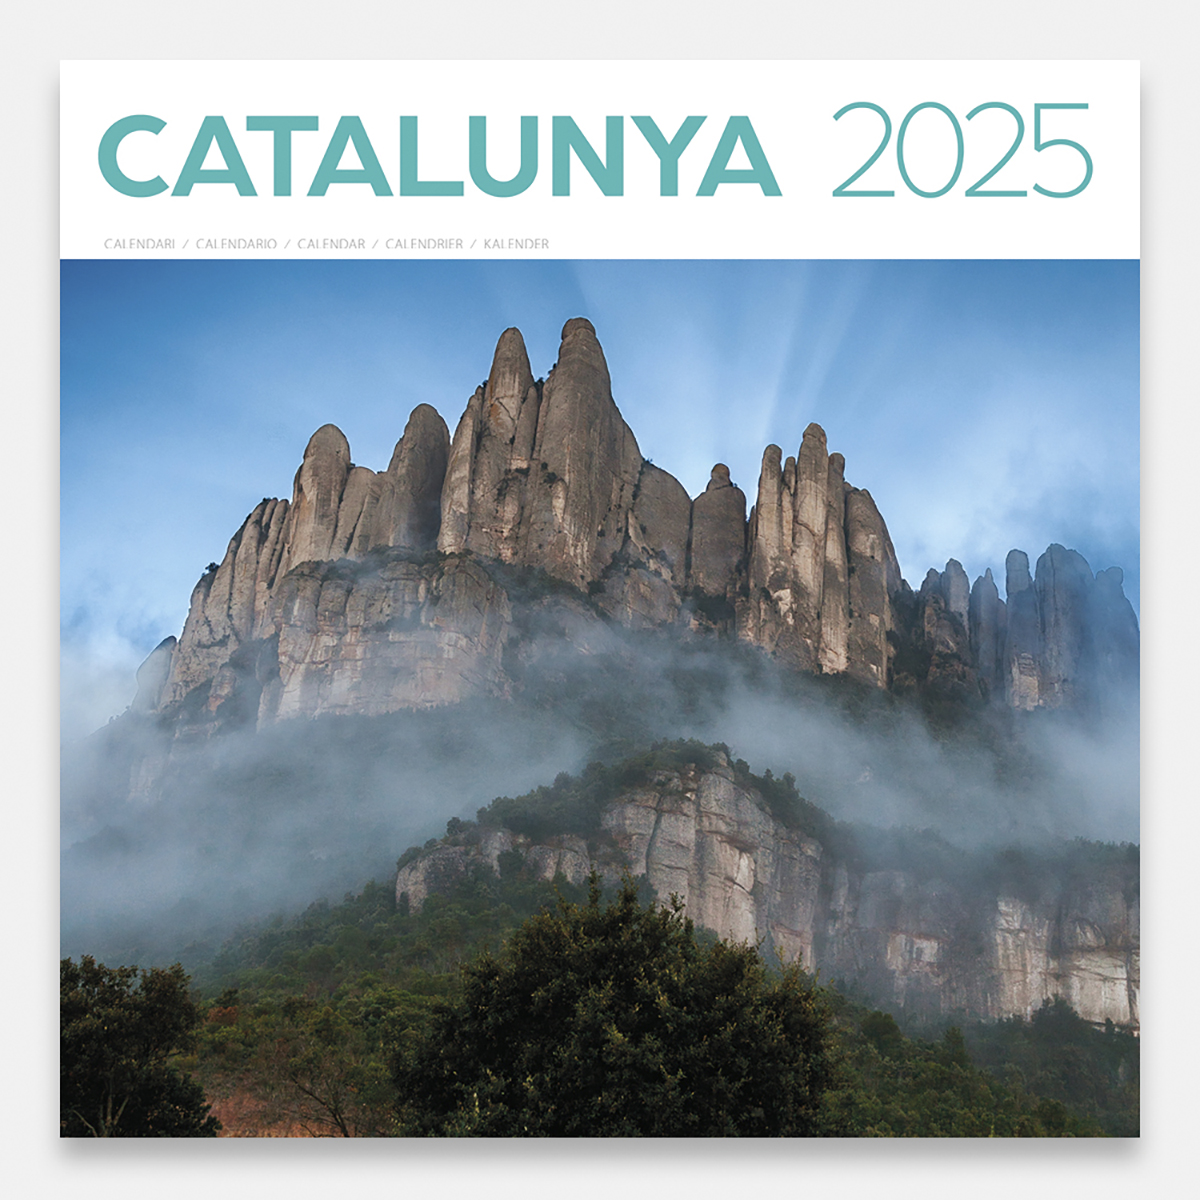 Calendario 2025 Cataluña 25catg calendario pared 2025 catalunya cataluna catalonia